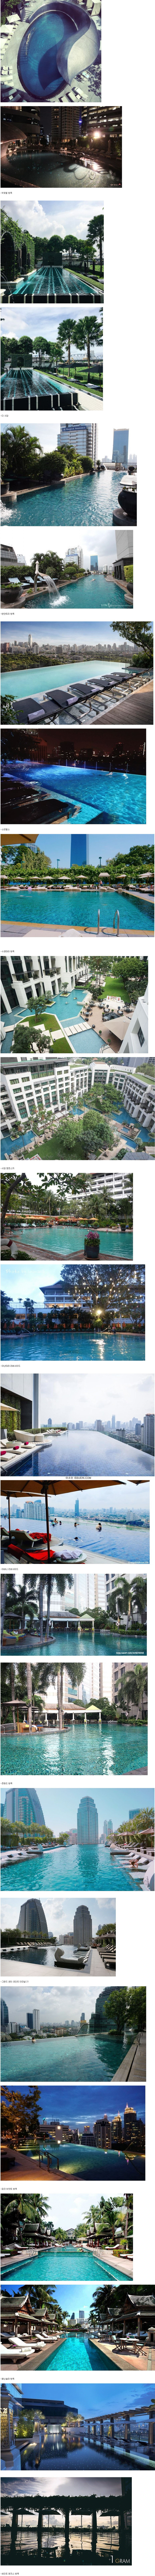 태국 방콕 호텔 수영장들